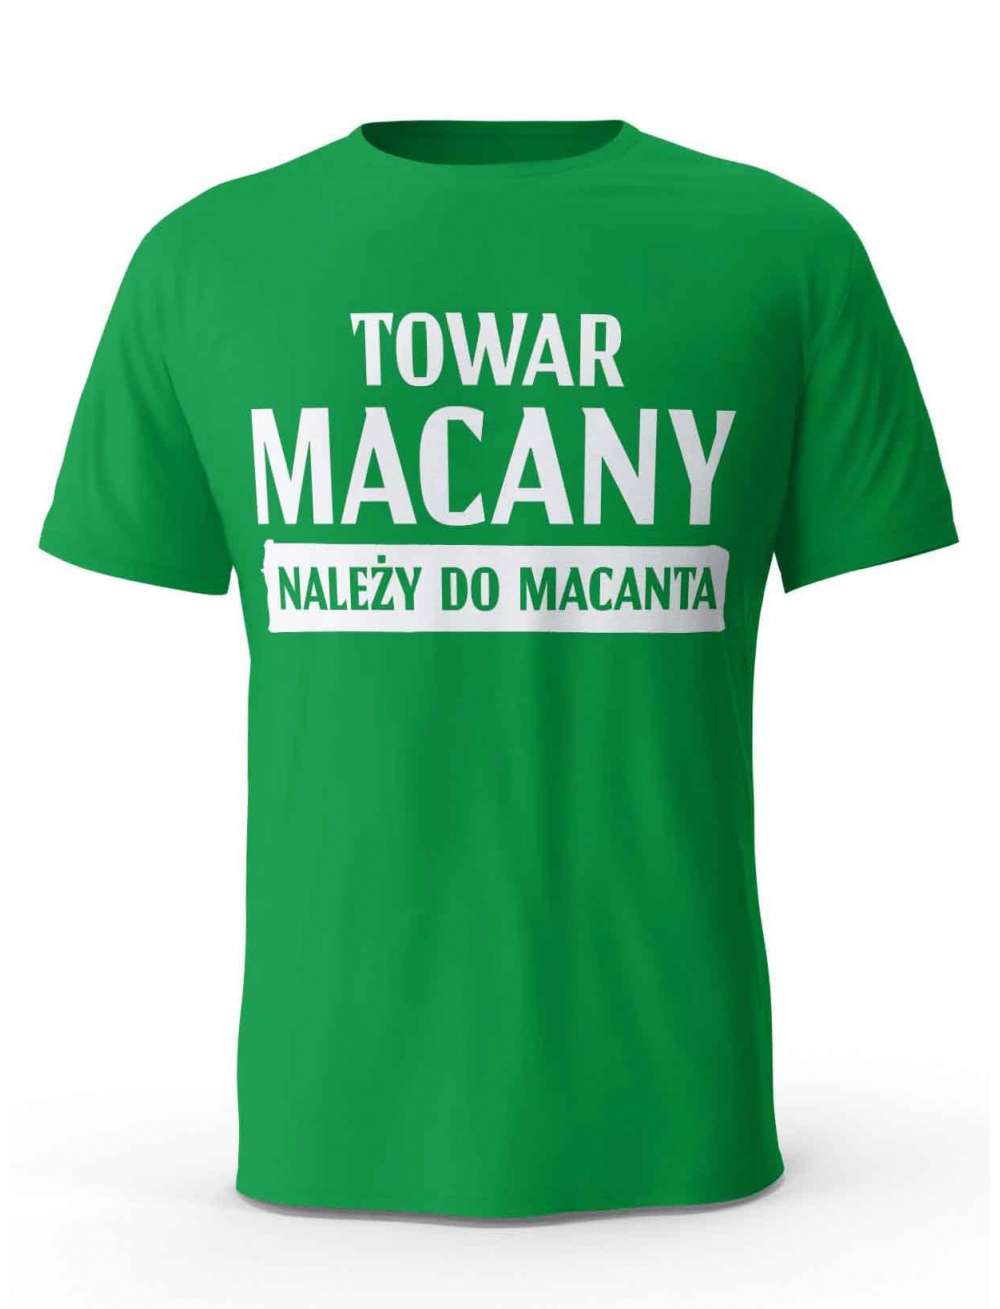 Koszulka Towar Macany Należy Do Macanta, T-shirt Dla Mężczyzny